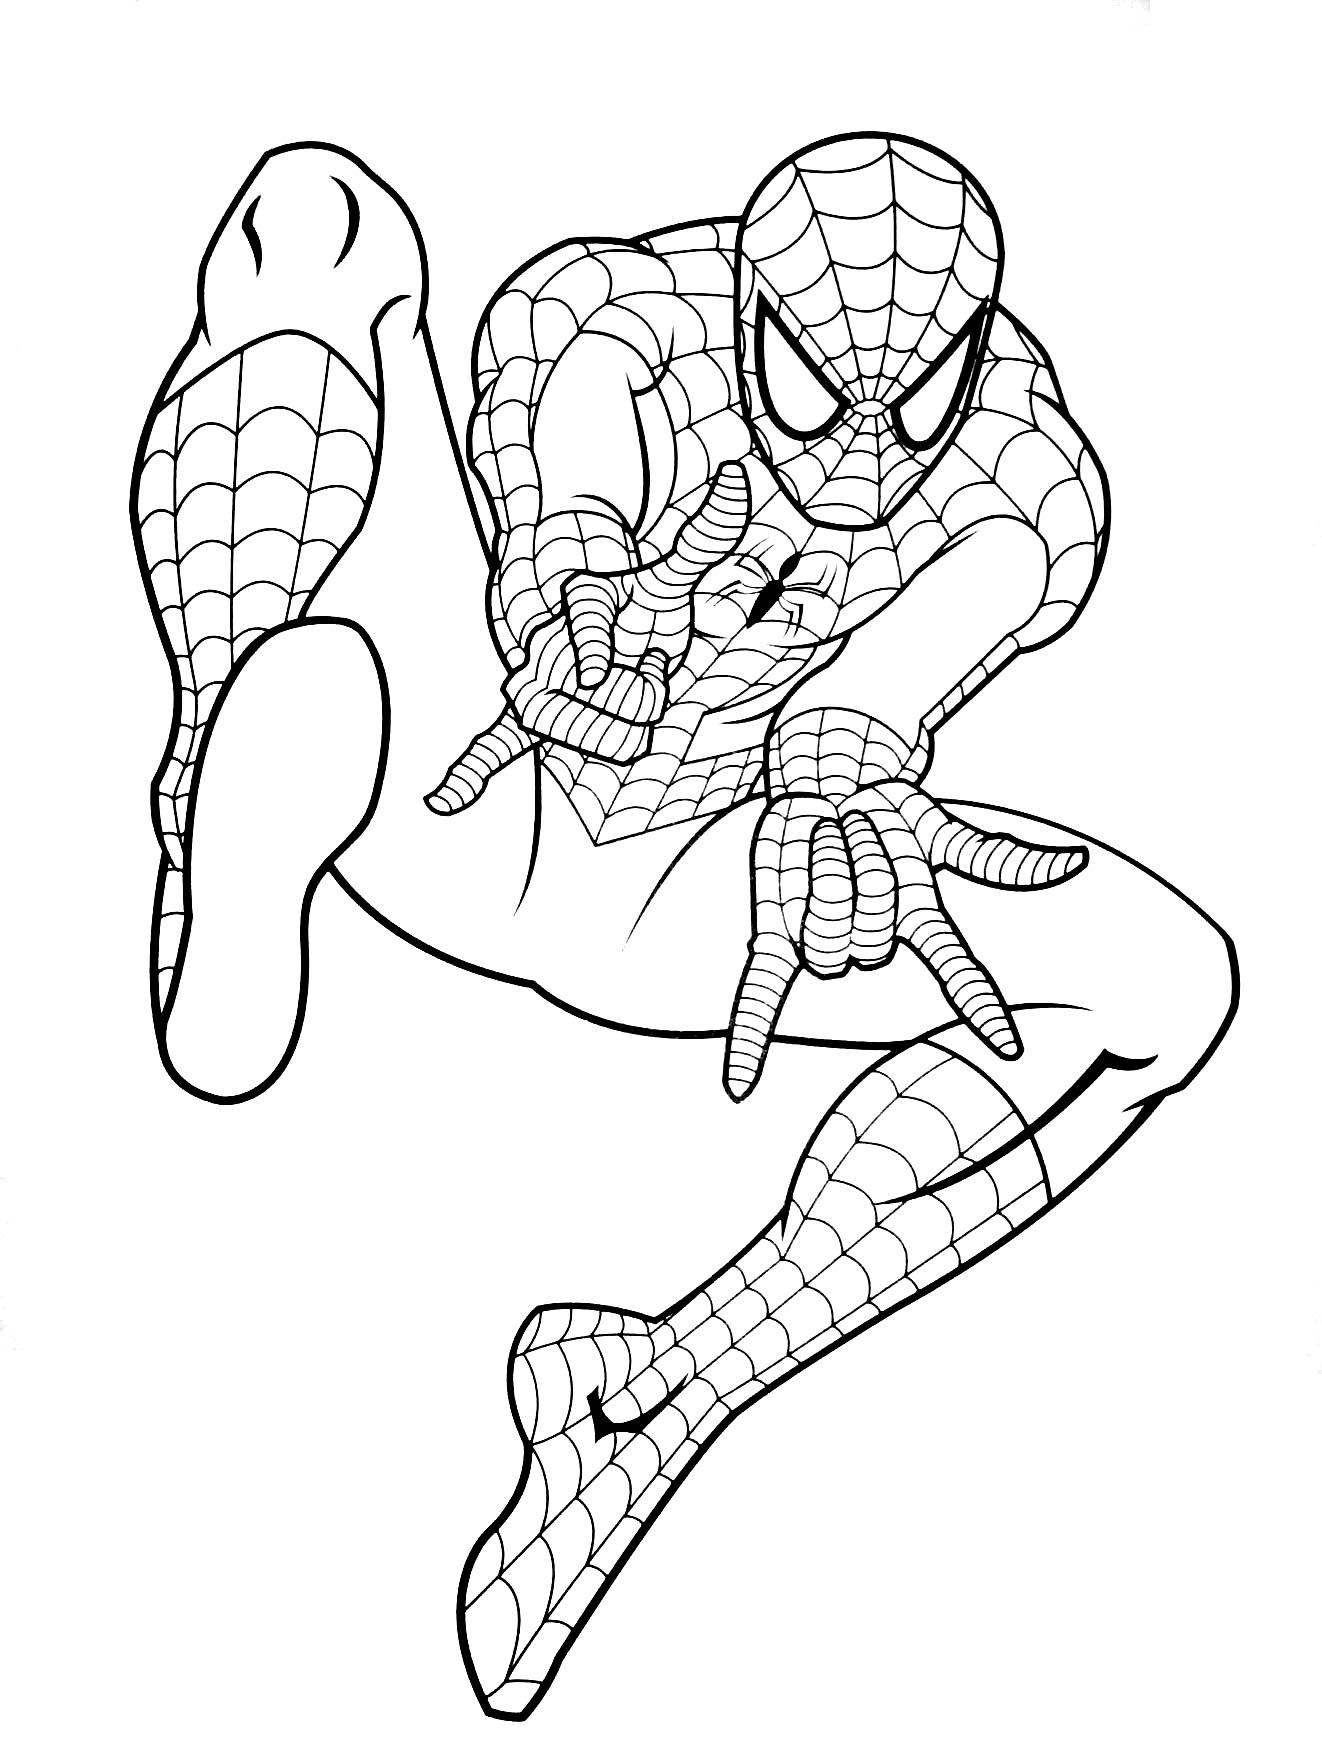 Coloriage de Spiderman à colorier pour enfants - Coloriage Spiderman